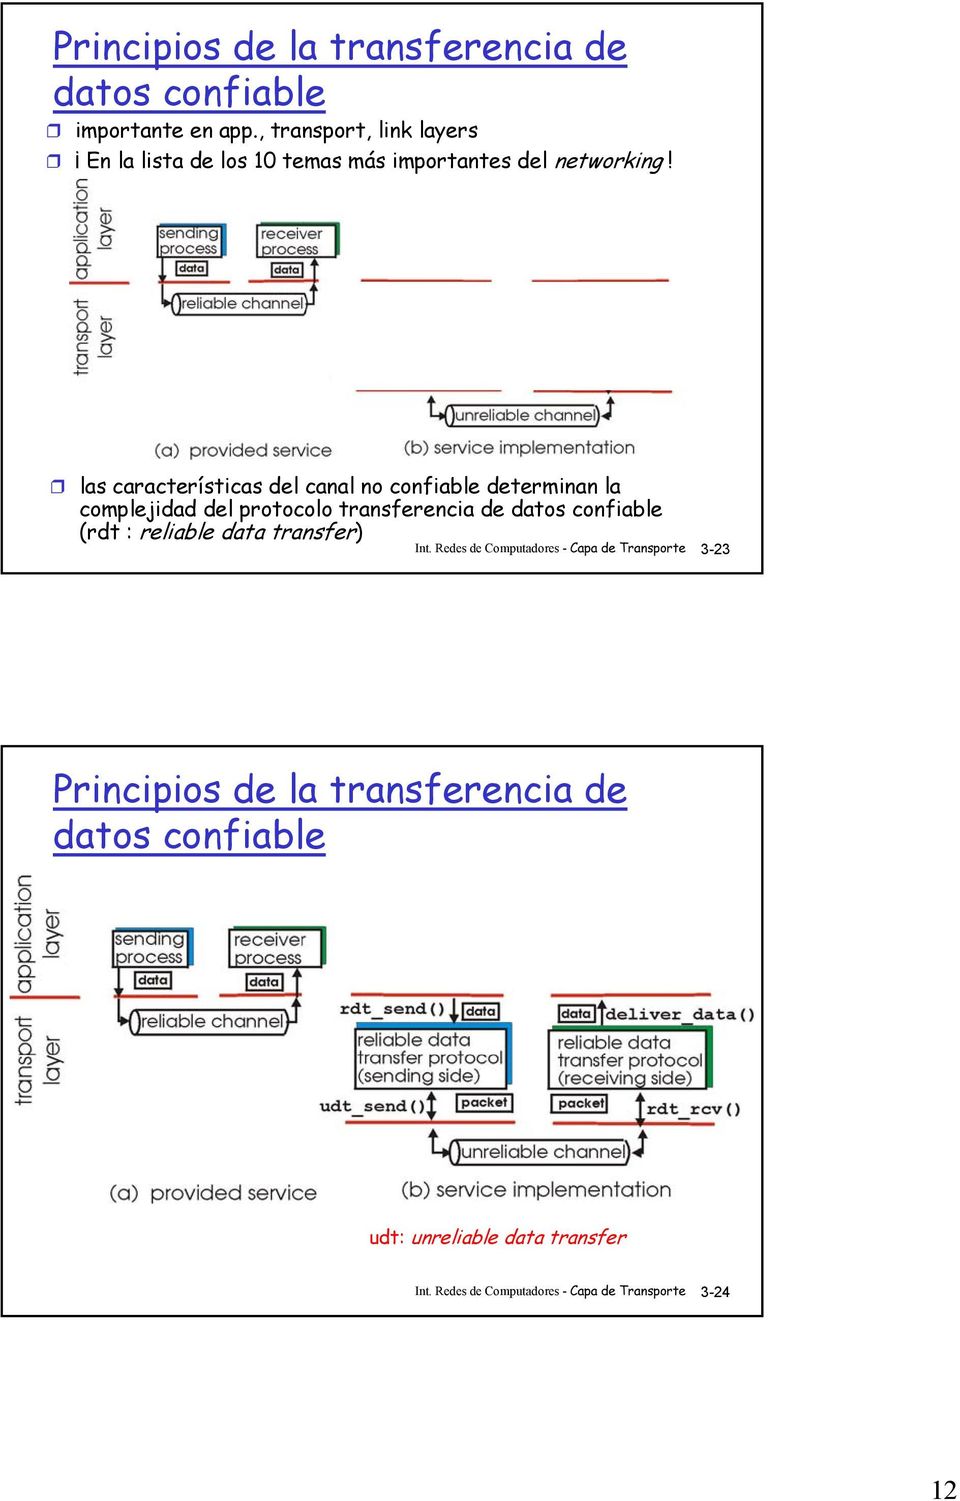 las características del canal no confiable determinan la complejidad del protocolo transferencia de datos confiable (rdt